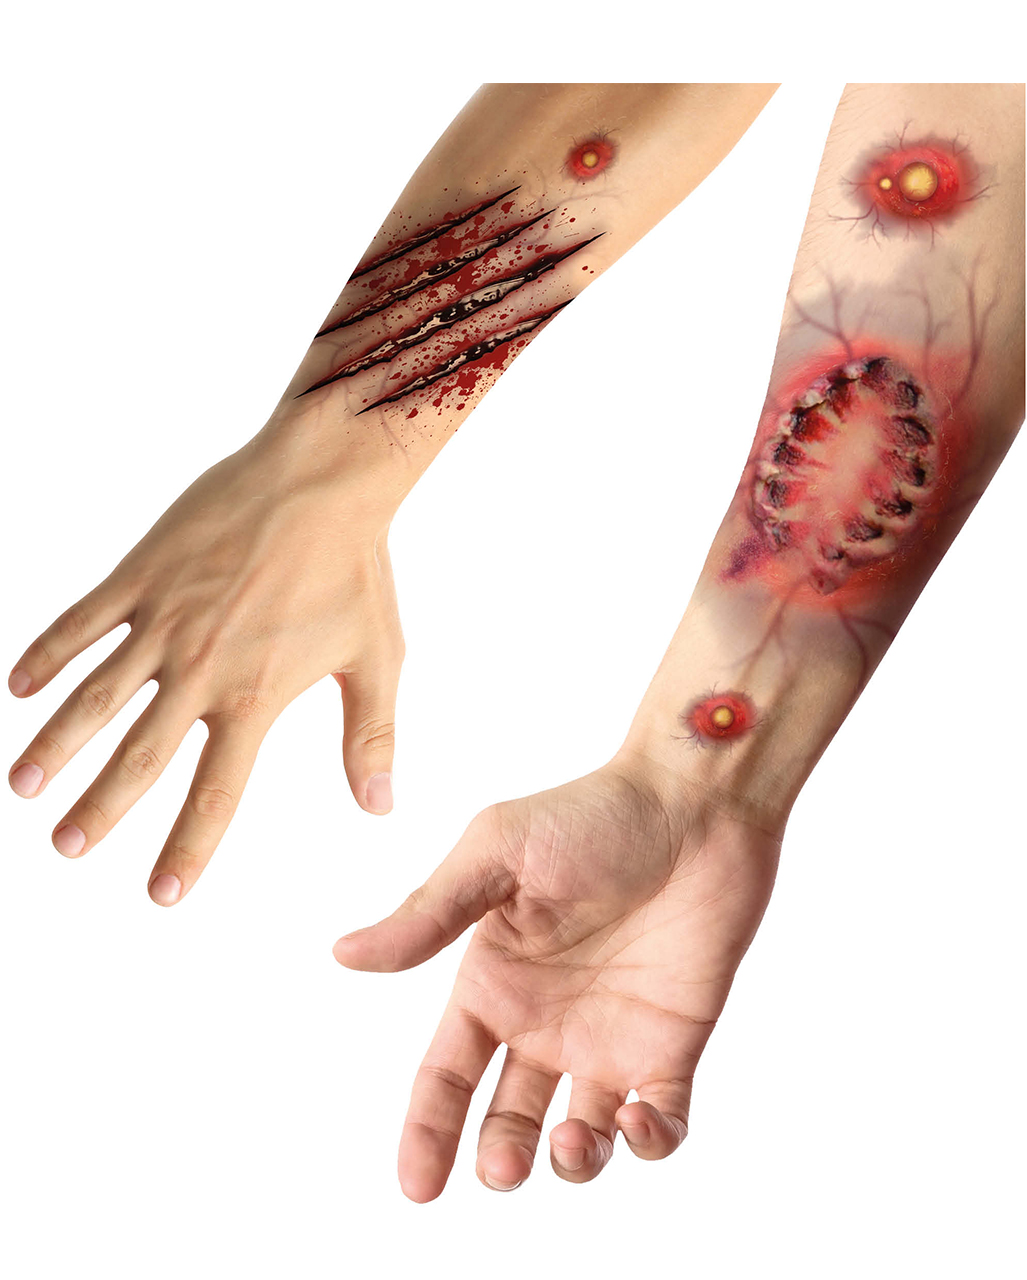 vampire bite tattoo on wrist